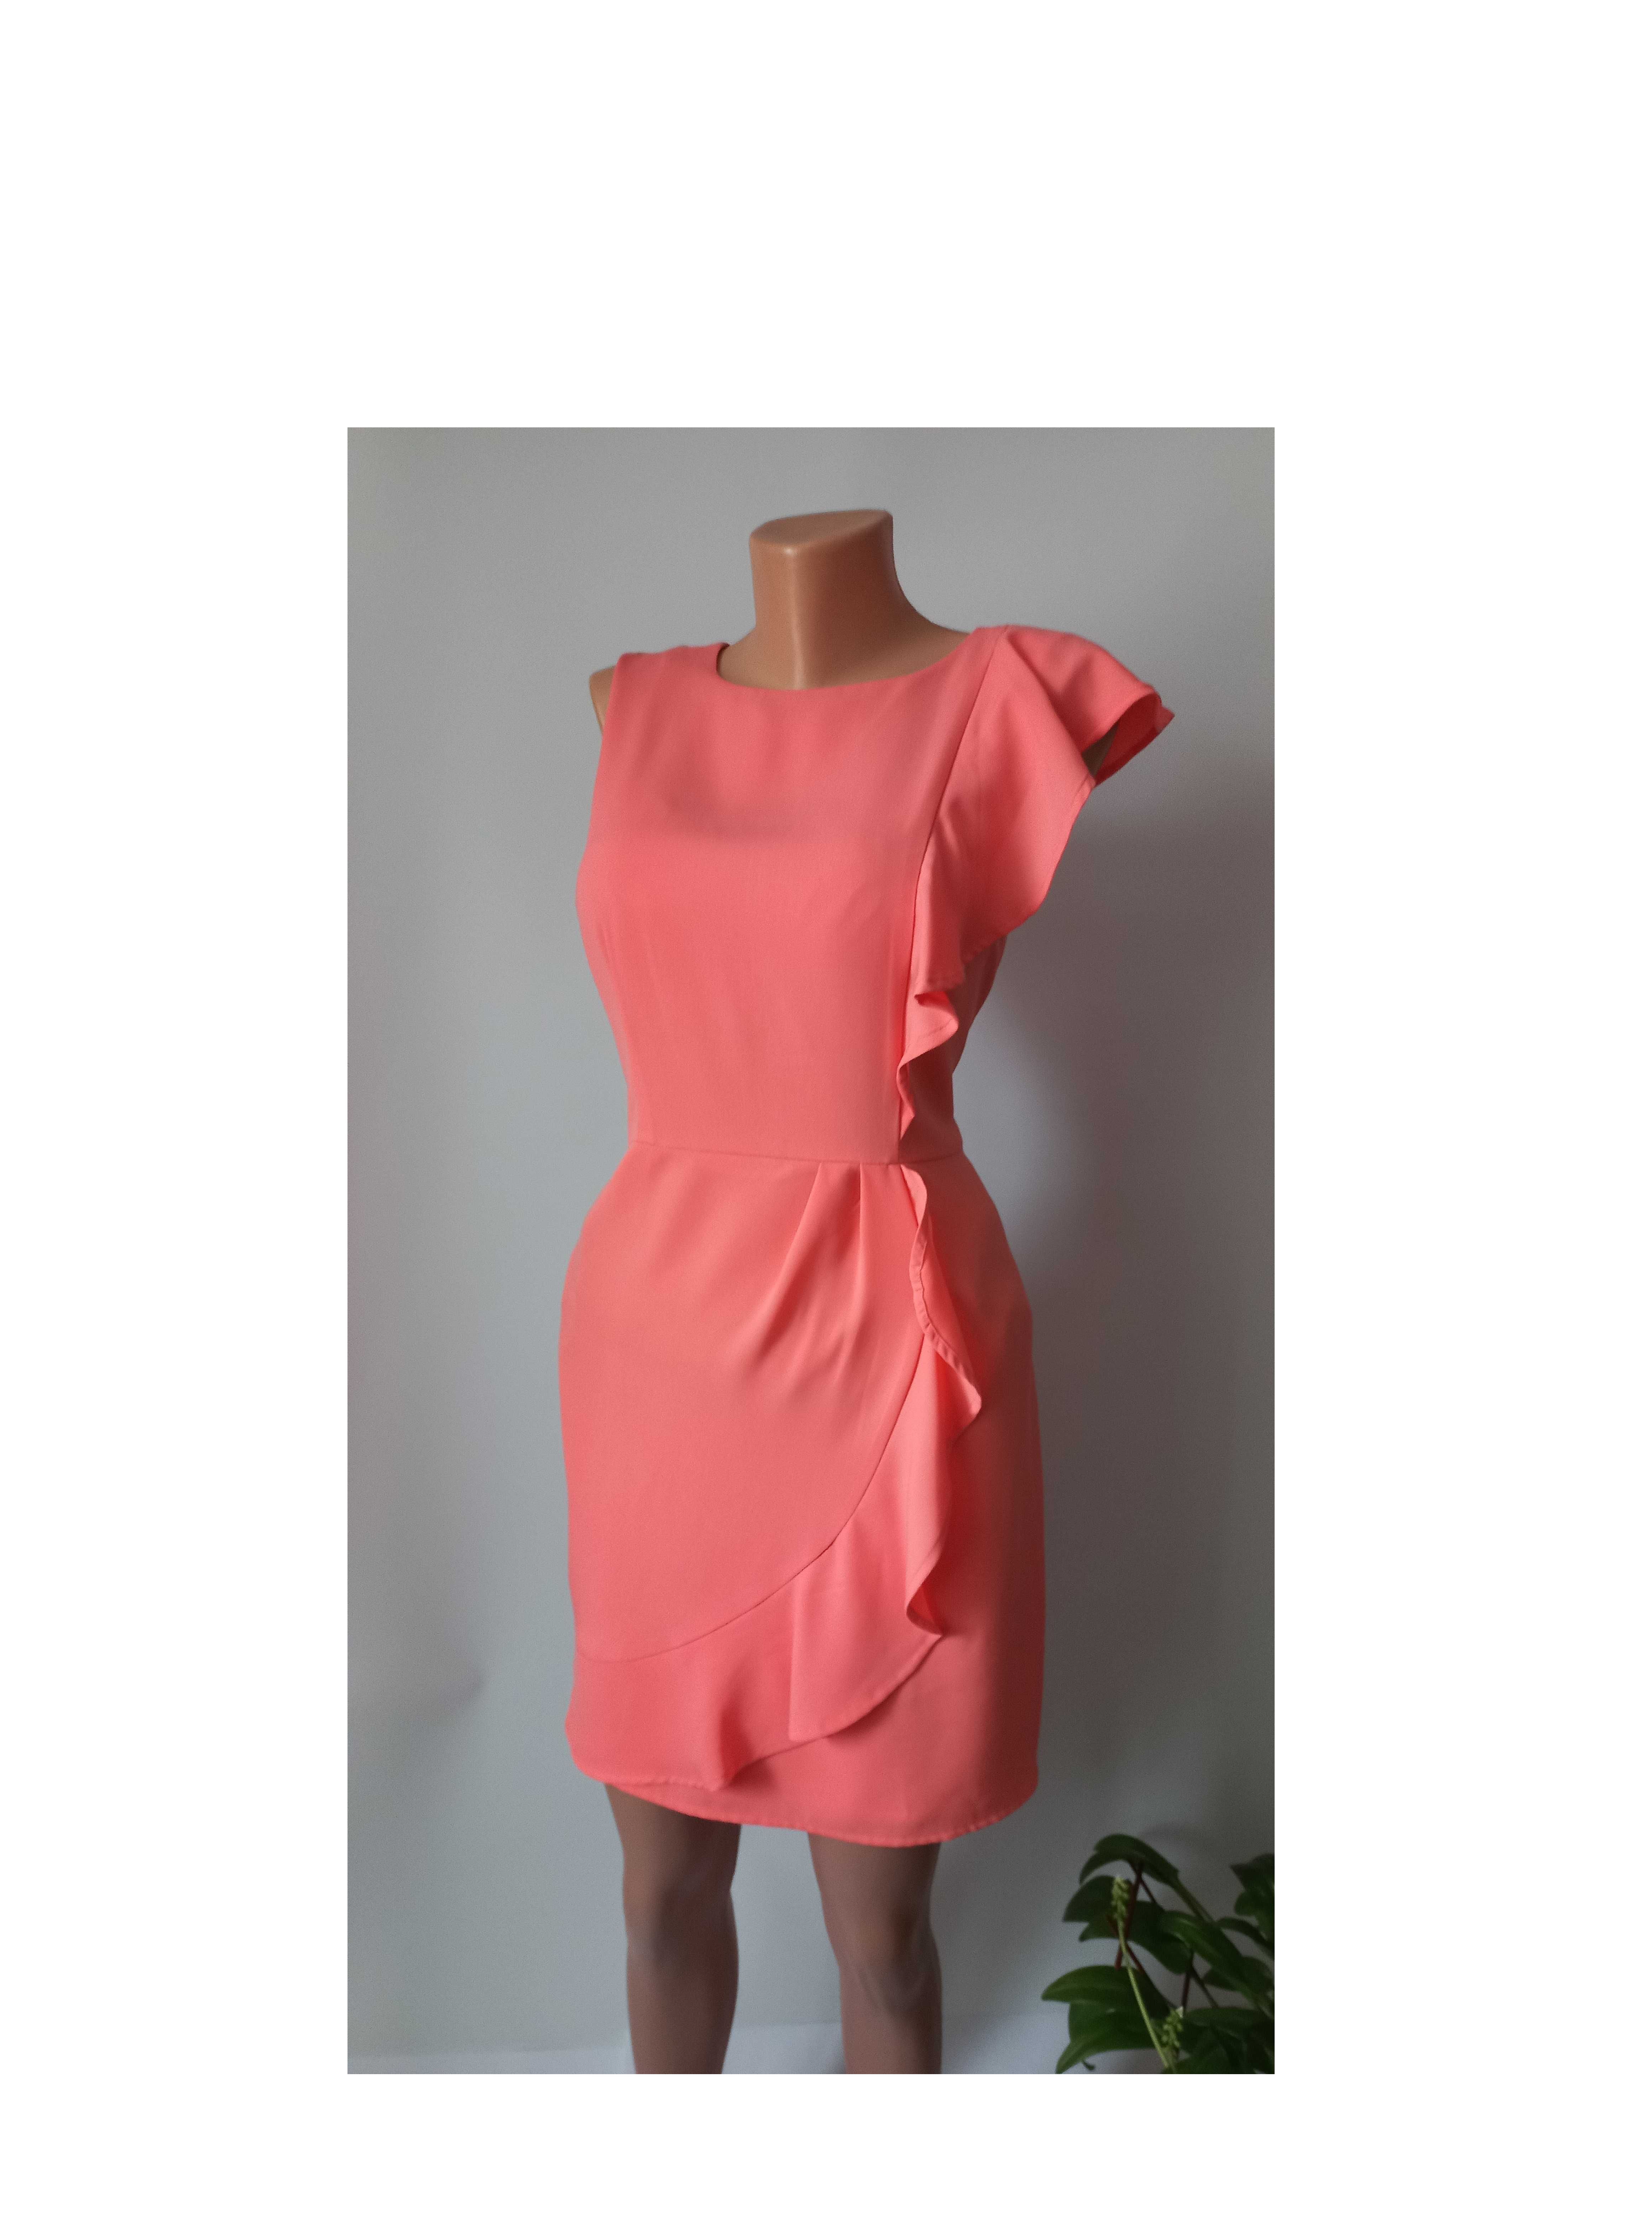 Коротка вечірня персикова сукня 48 46 розмір футляр